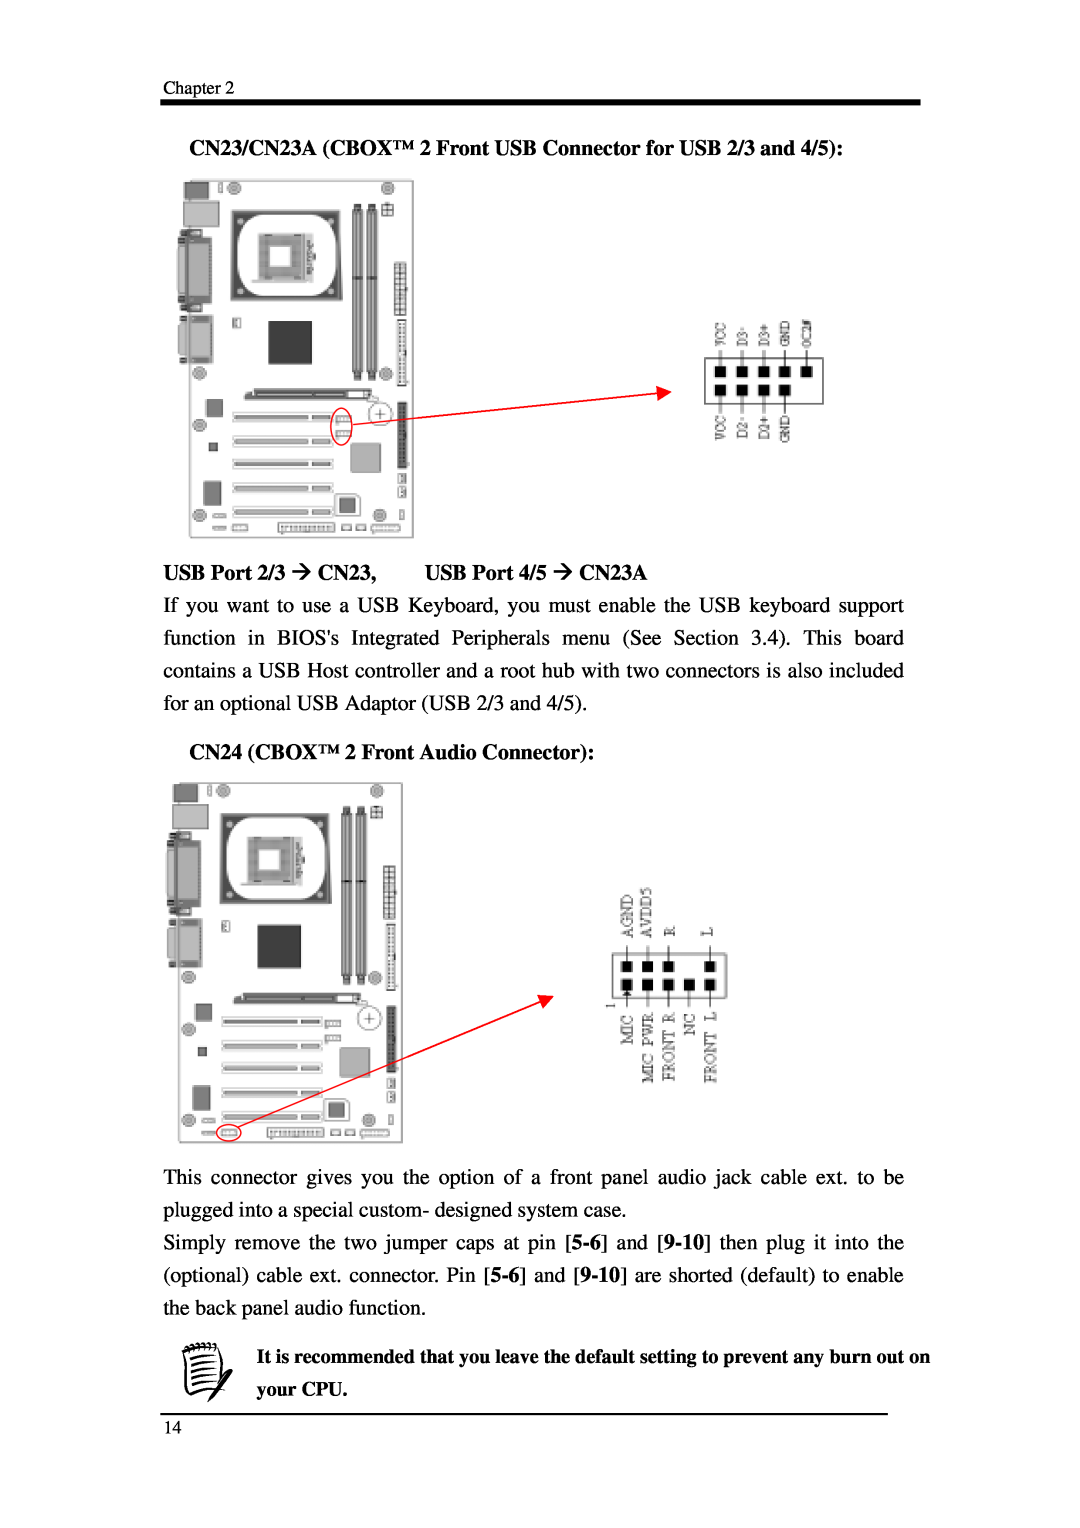 Intel 9EJL4 manual USB Port 2/3 CN23, USB Port 4/5 CN23A, CN24 CBOX 2 Front Audio Connector, Chapter 